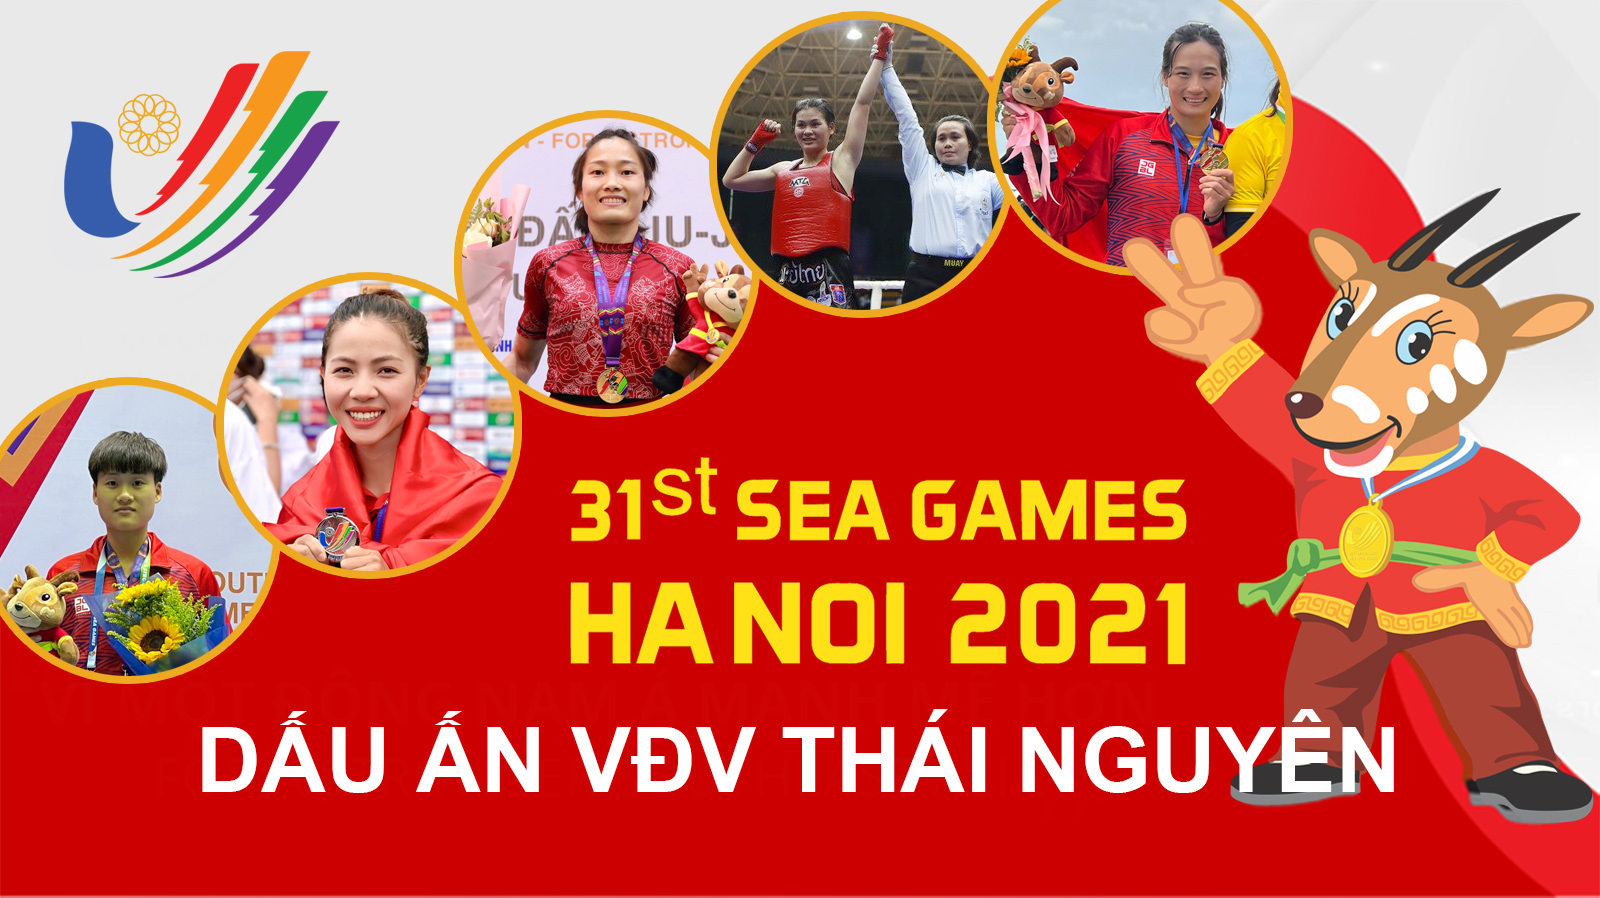 Dấu ấn nổi bật của các vận động viên Thái Nguyên tại SEA Games 31